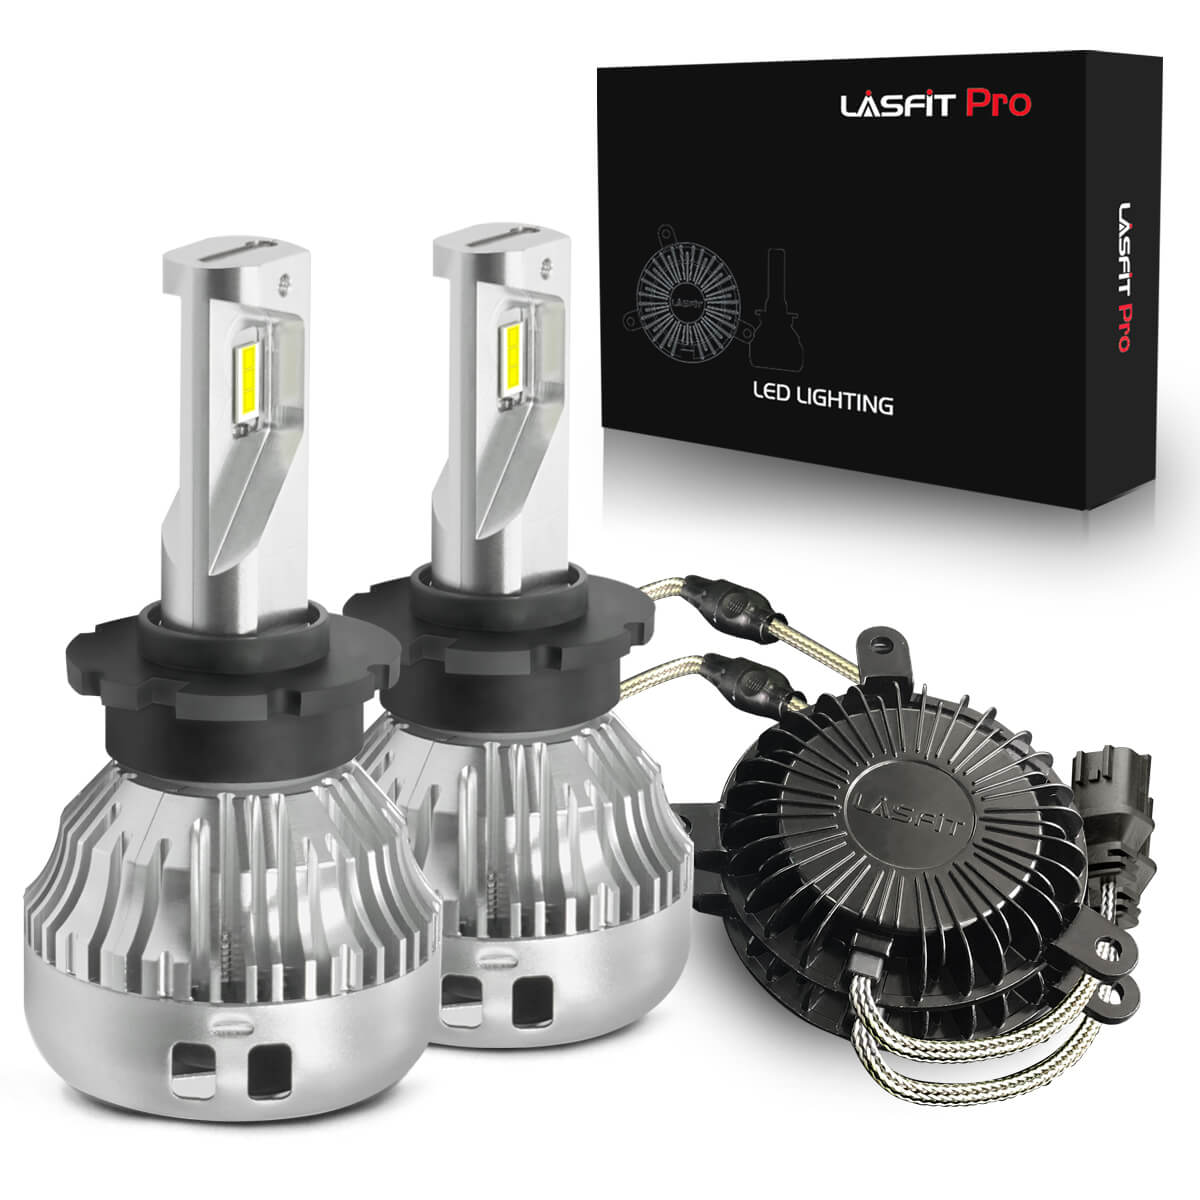 Replacement OEM HID Bulbs for 2009-2013 Infiniti G37 Sedan (pair)